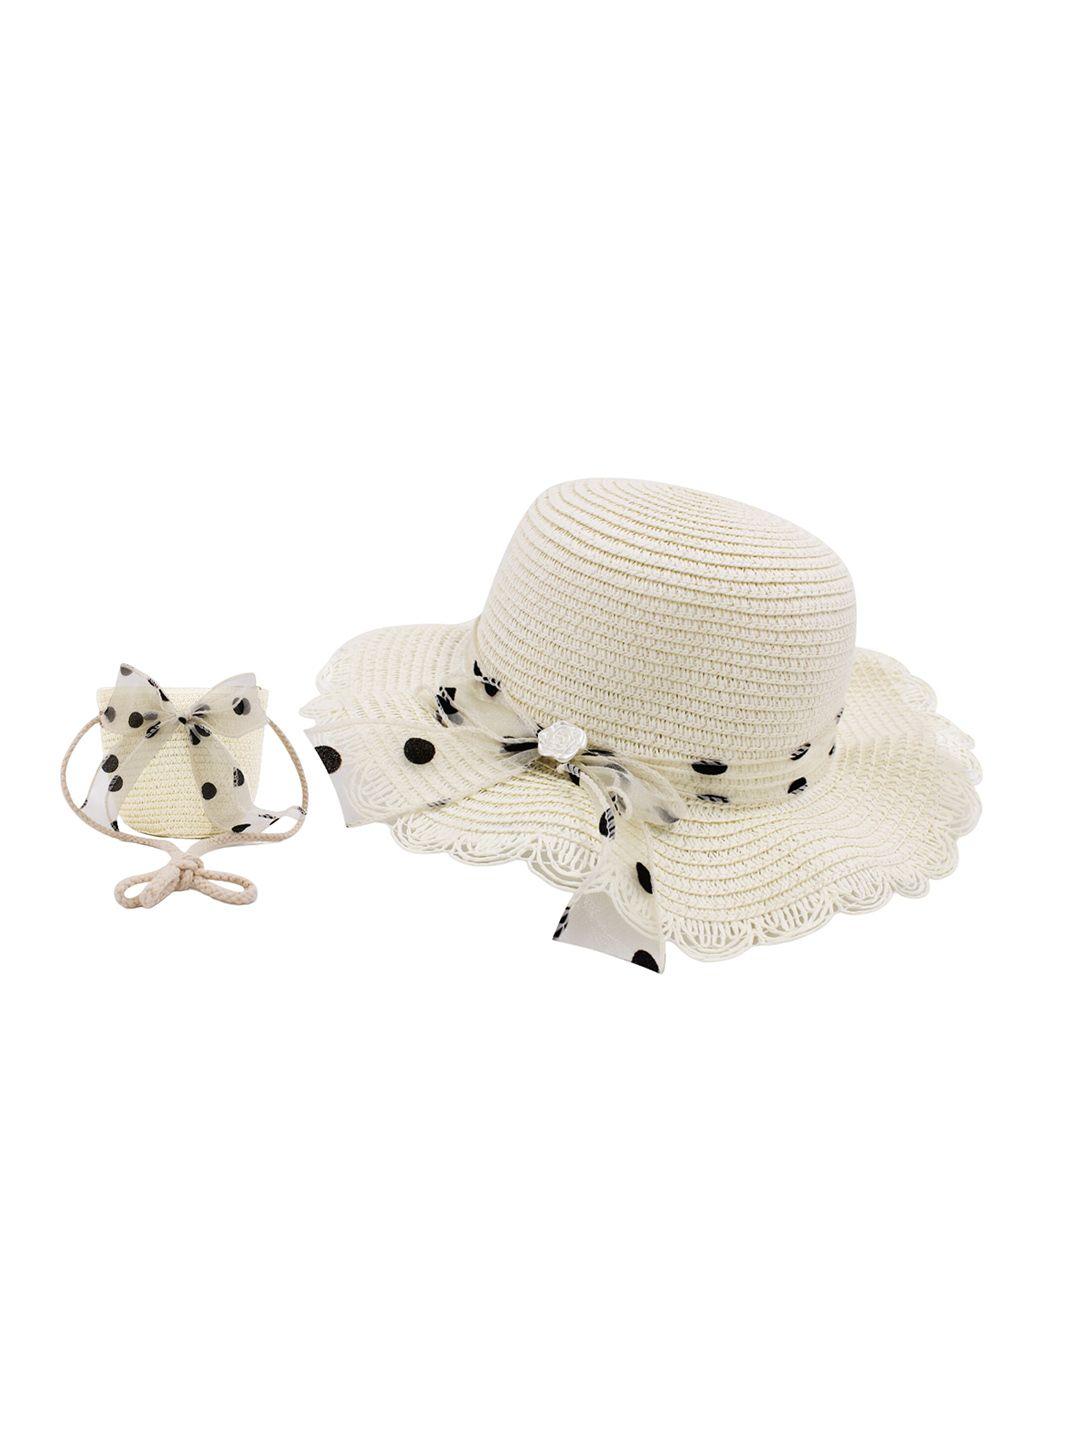 JENNA Girls Polka Dot Self Design Bow Sun Hat & Sling Bag